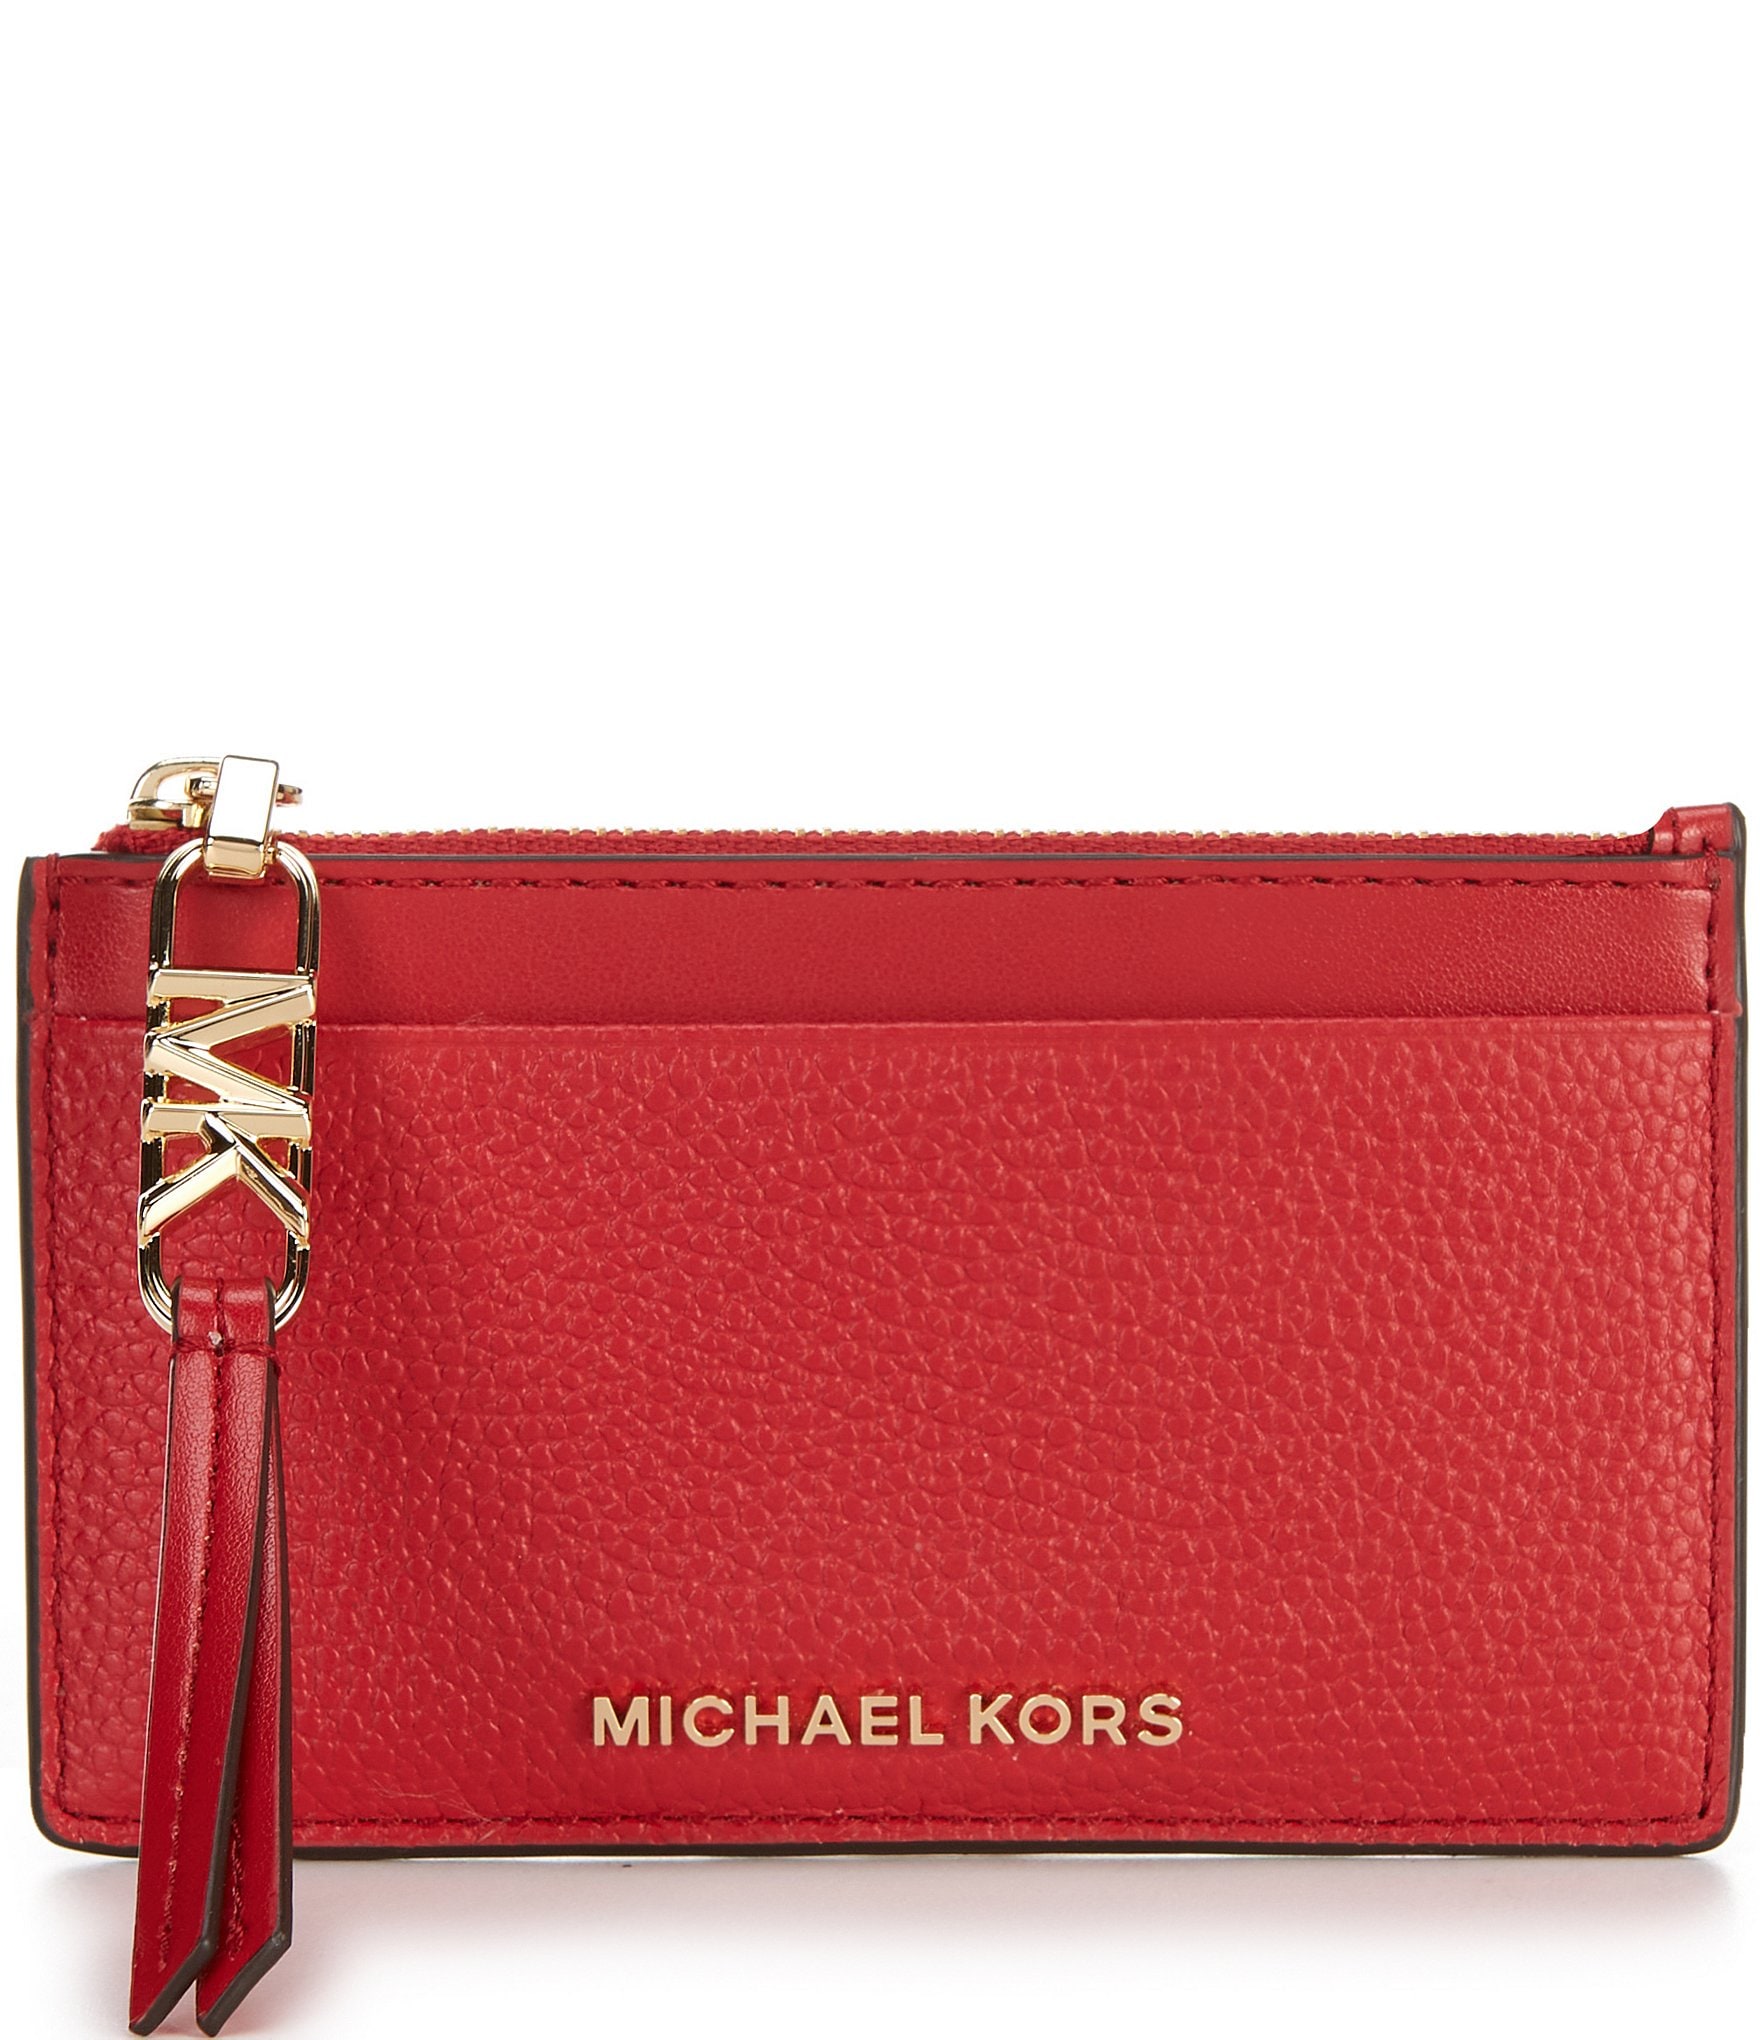 Michael Kors Trisha - Large Pebbled Leather Shoulder Bag in Bright Red Purse  - Michael Kors bag - | Fash Brands